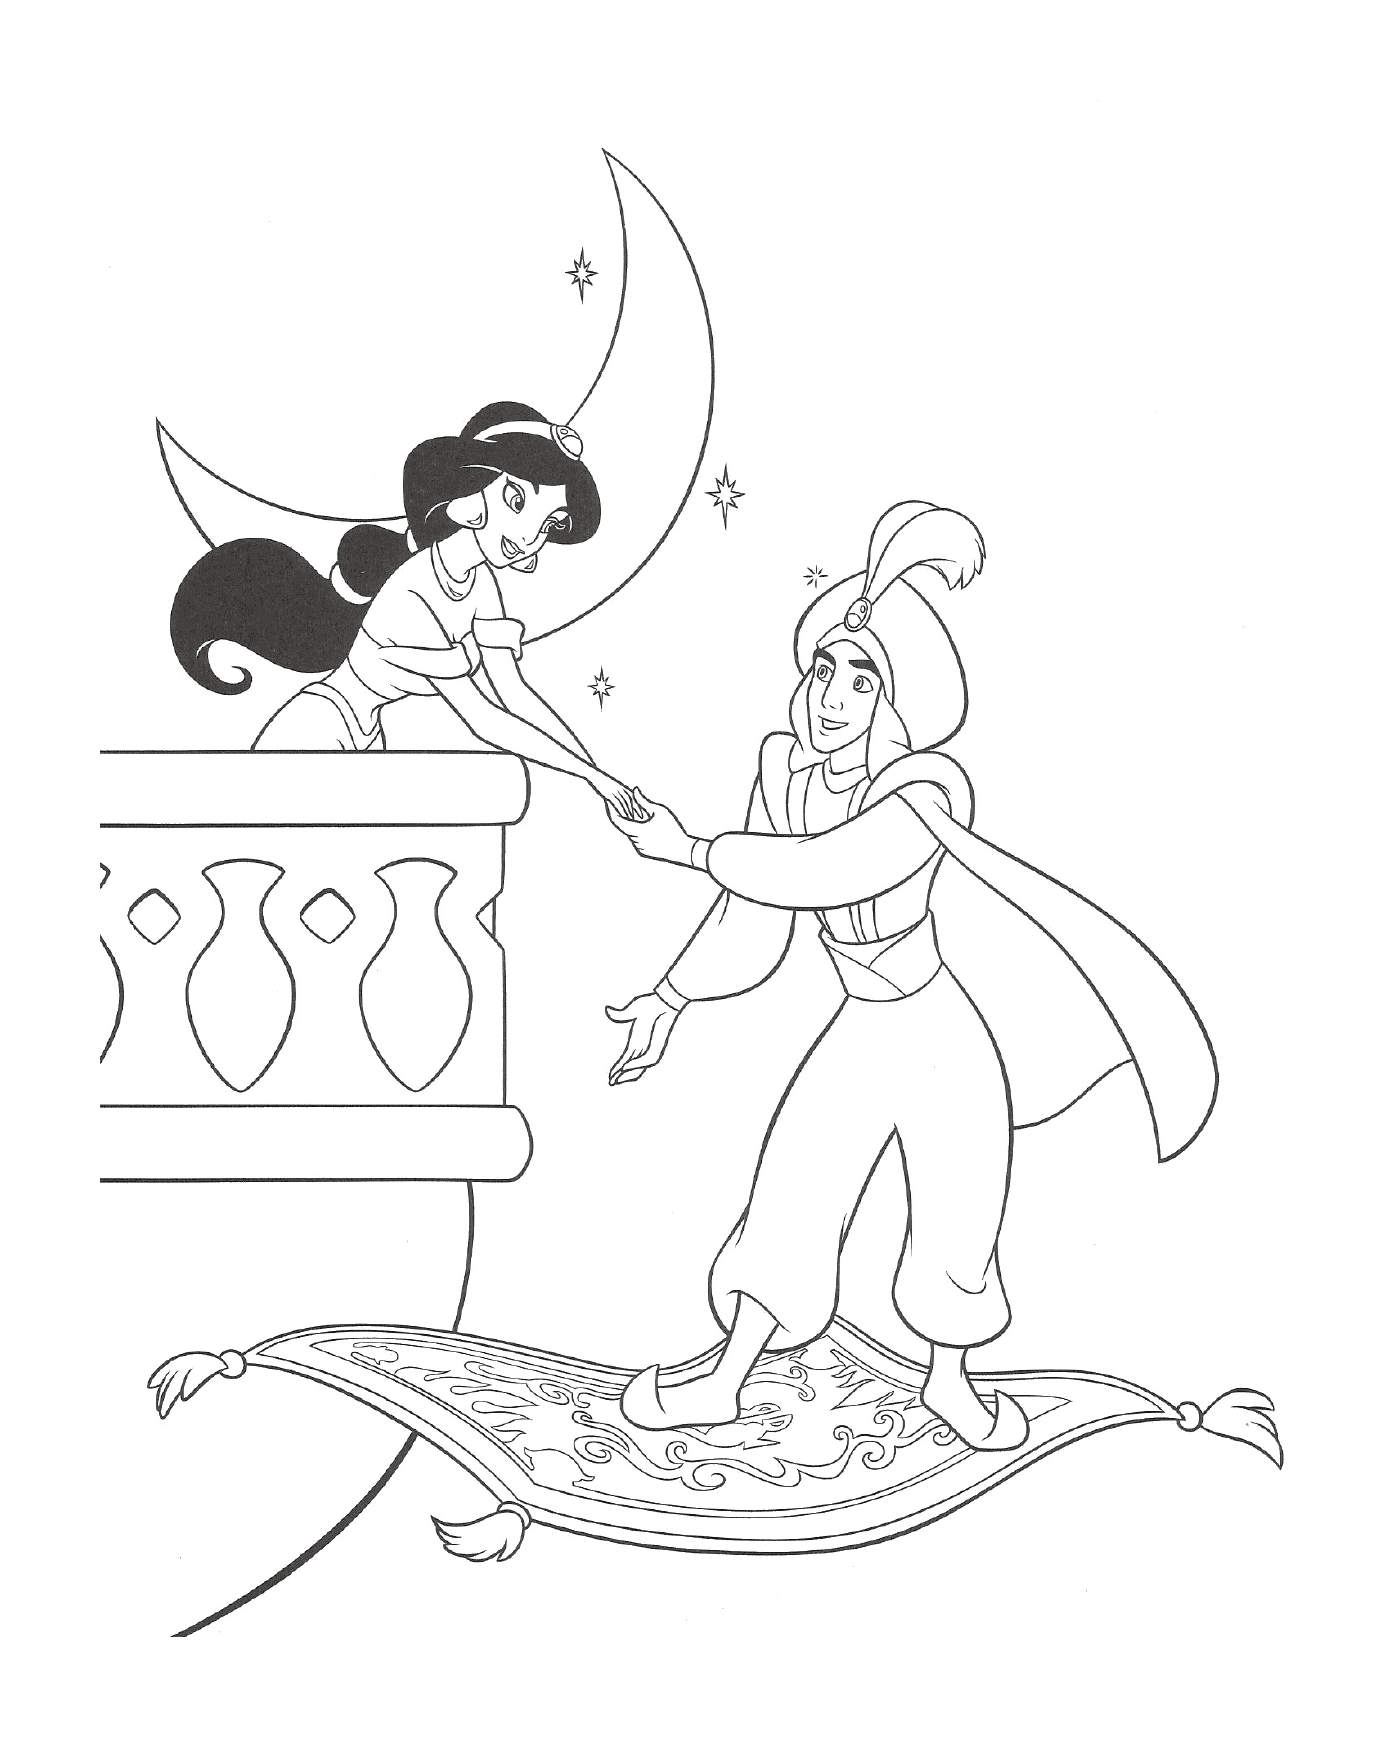  Aladin viene a prendere la principessa Jasmine 